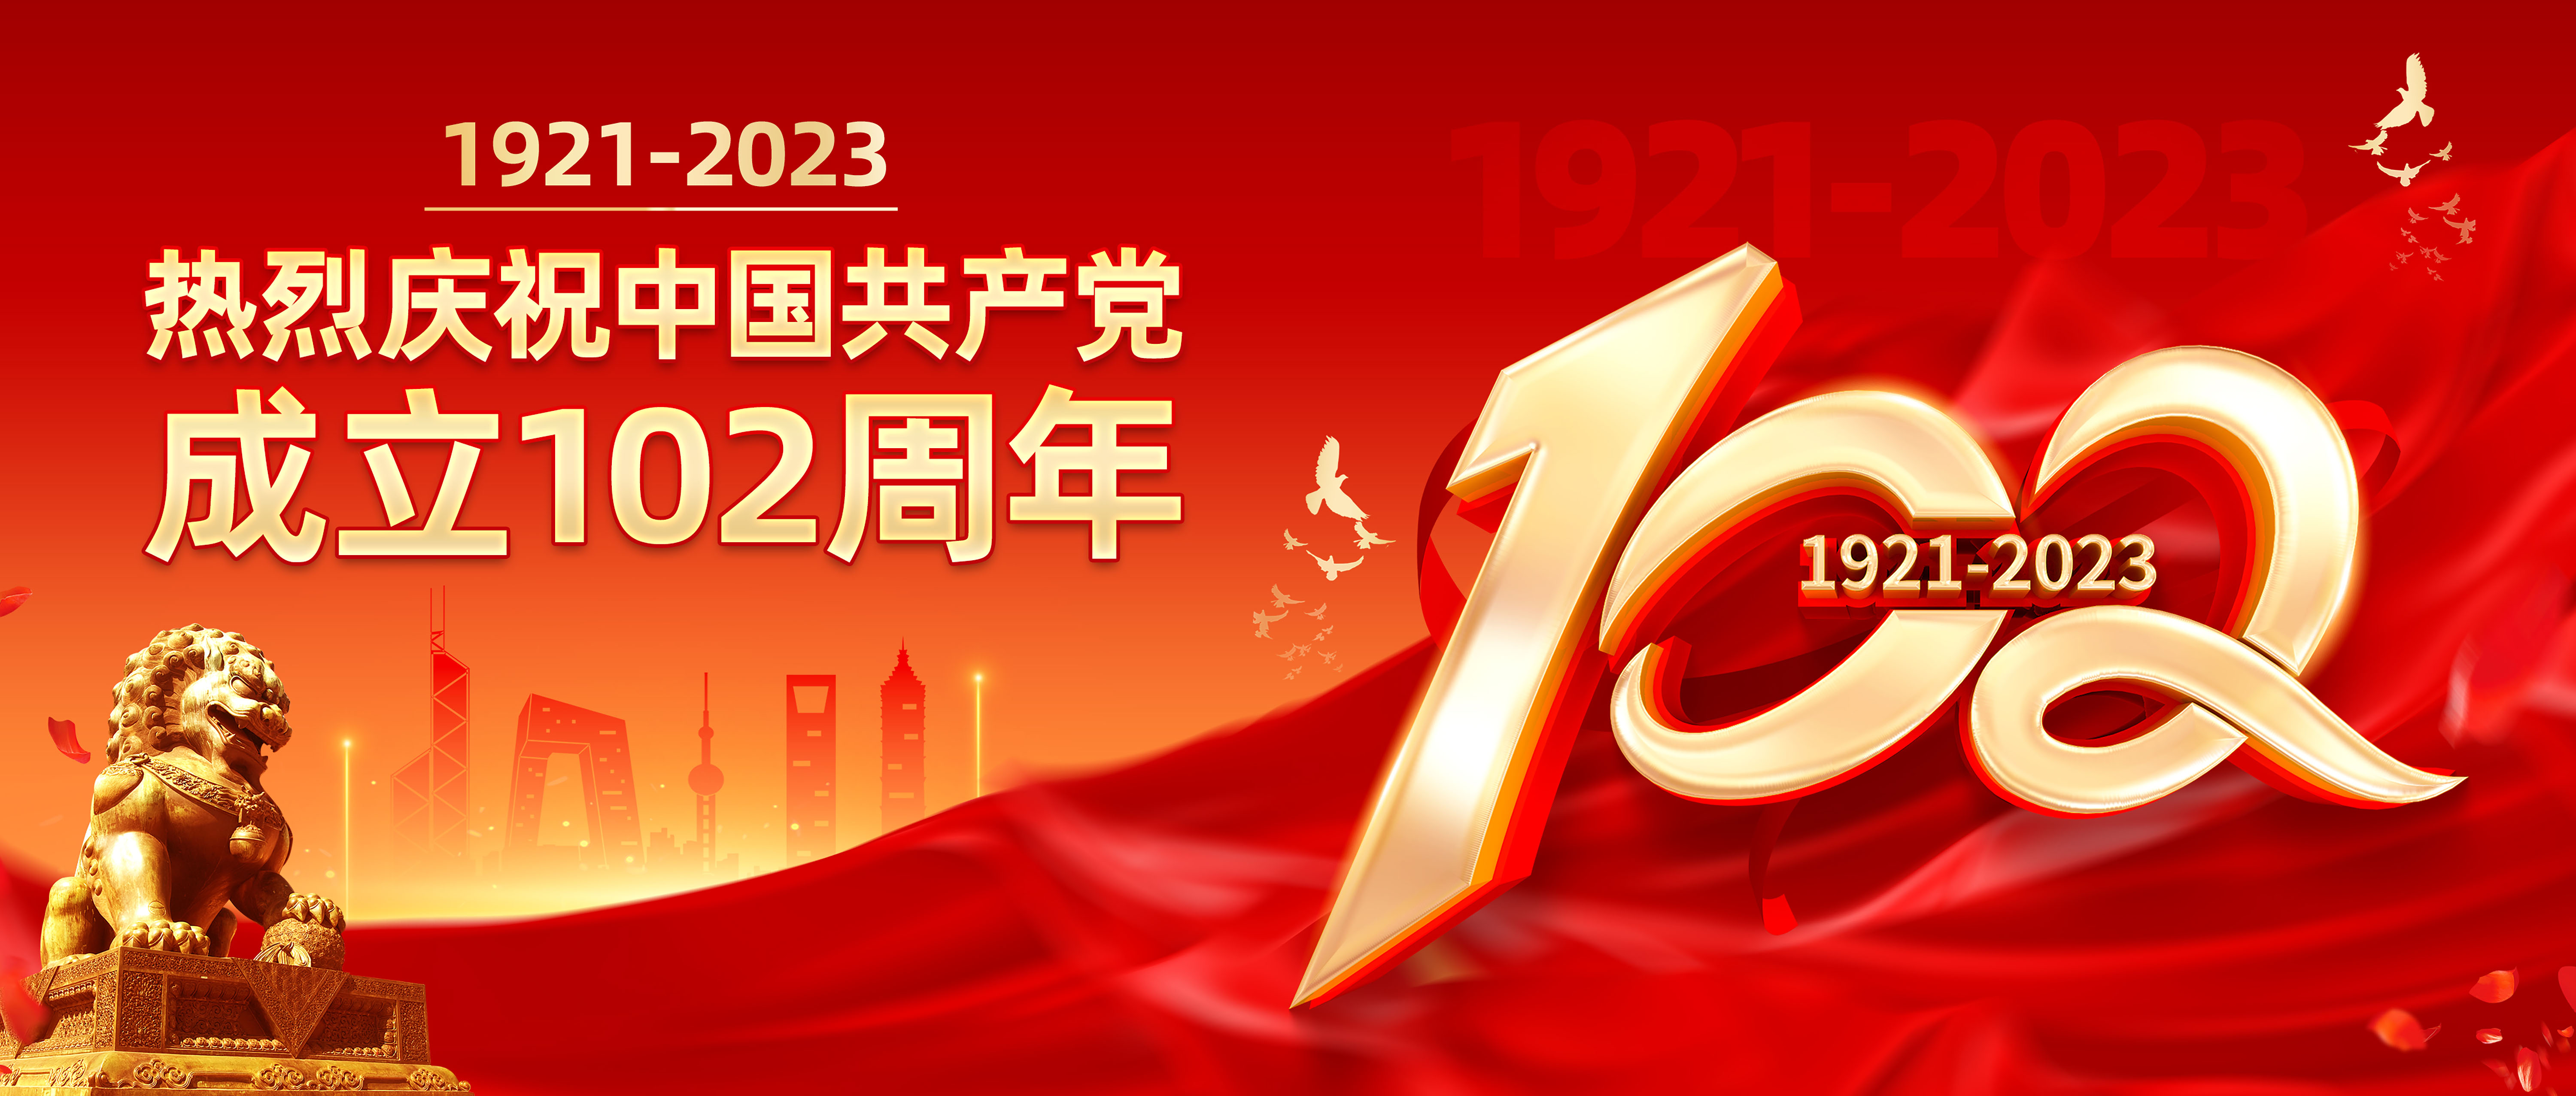 七一建党节 | 热烈庆祝中国共产党成立102周年